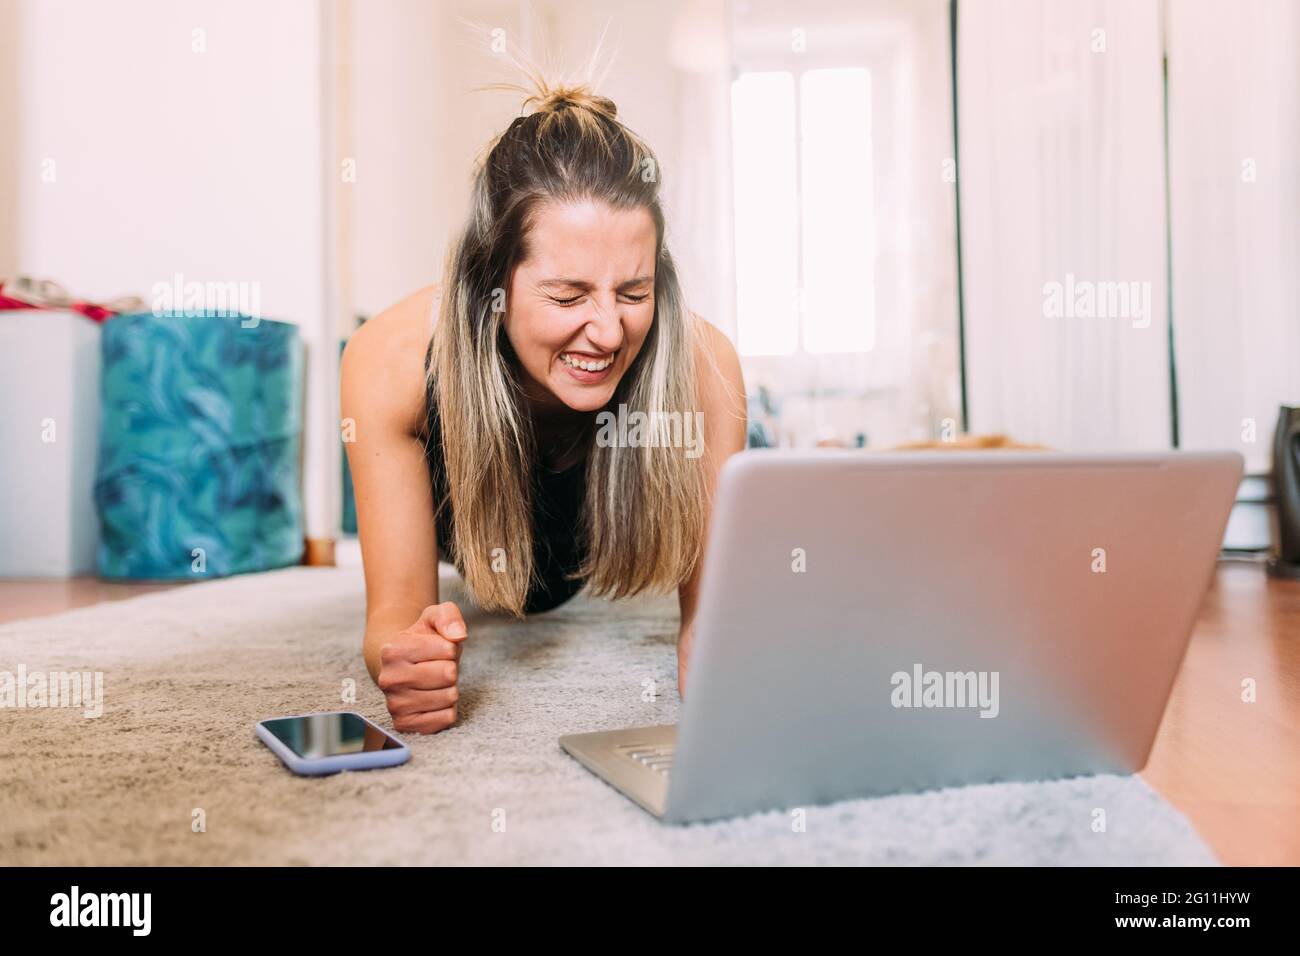 Italia, giovane donna che usa il laptop sul pavimento Foto Stock